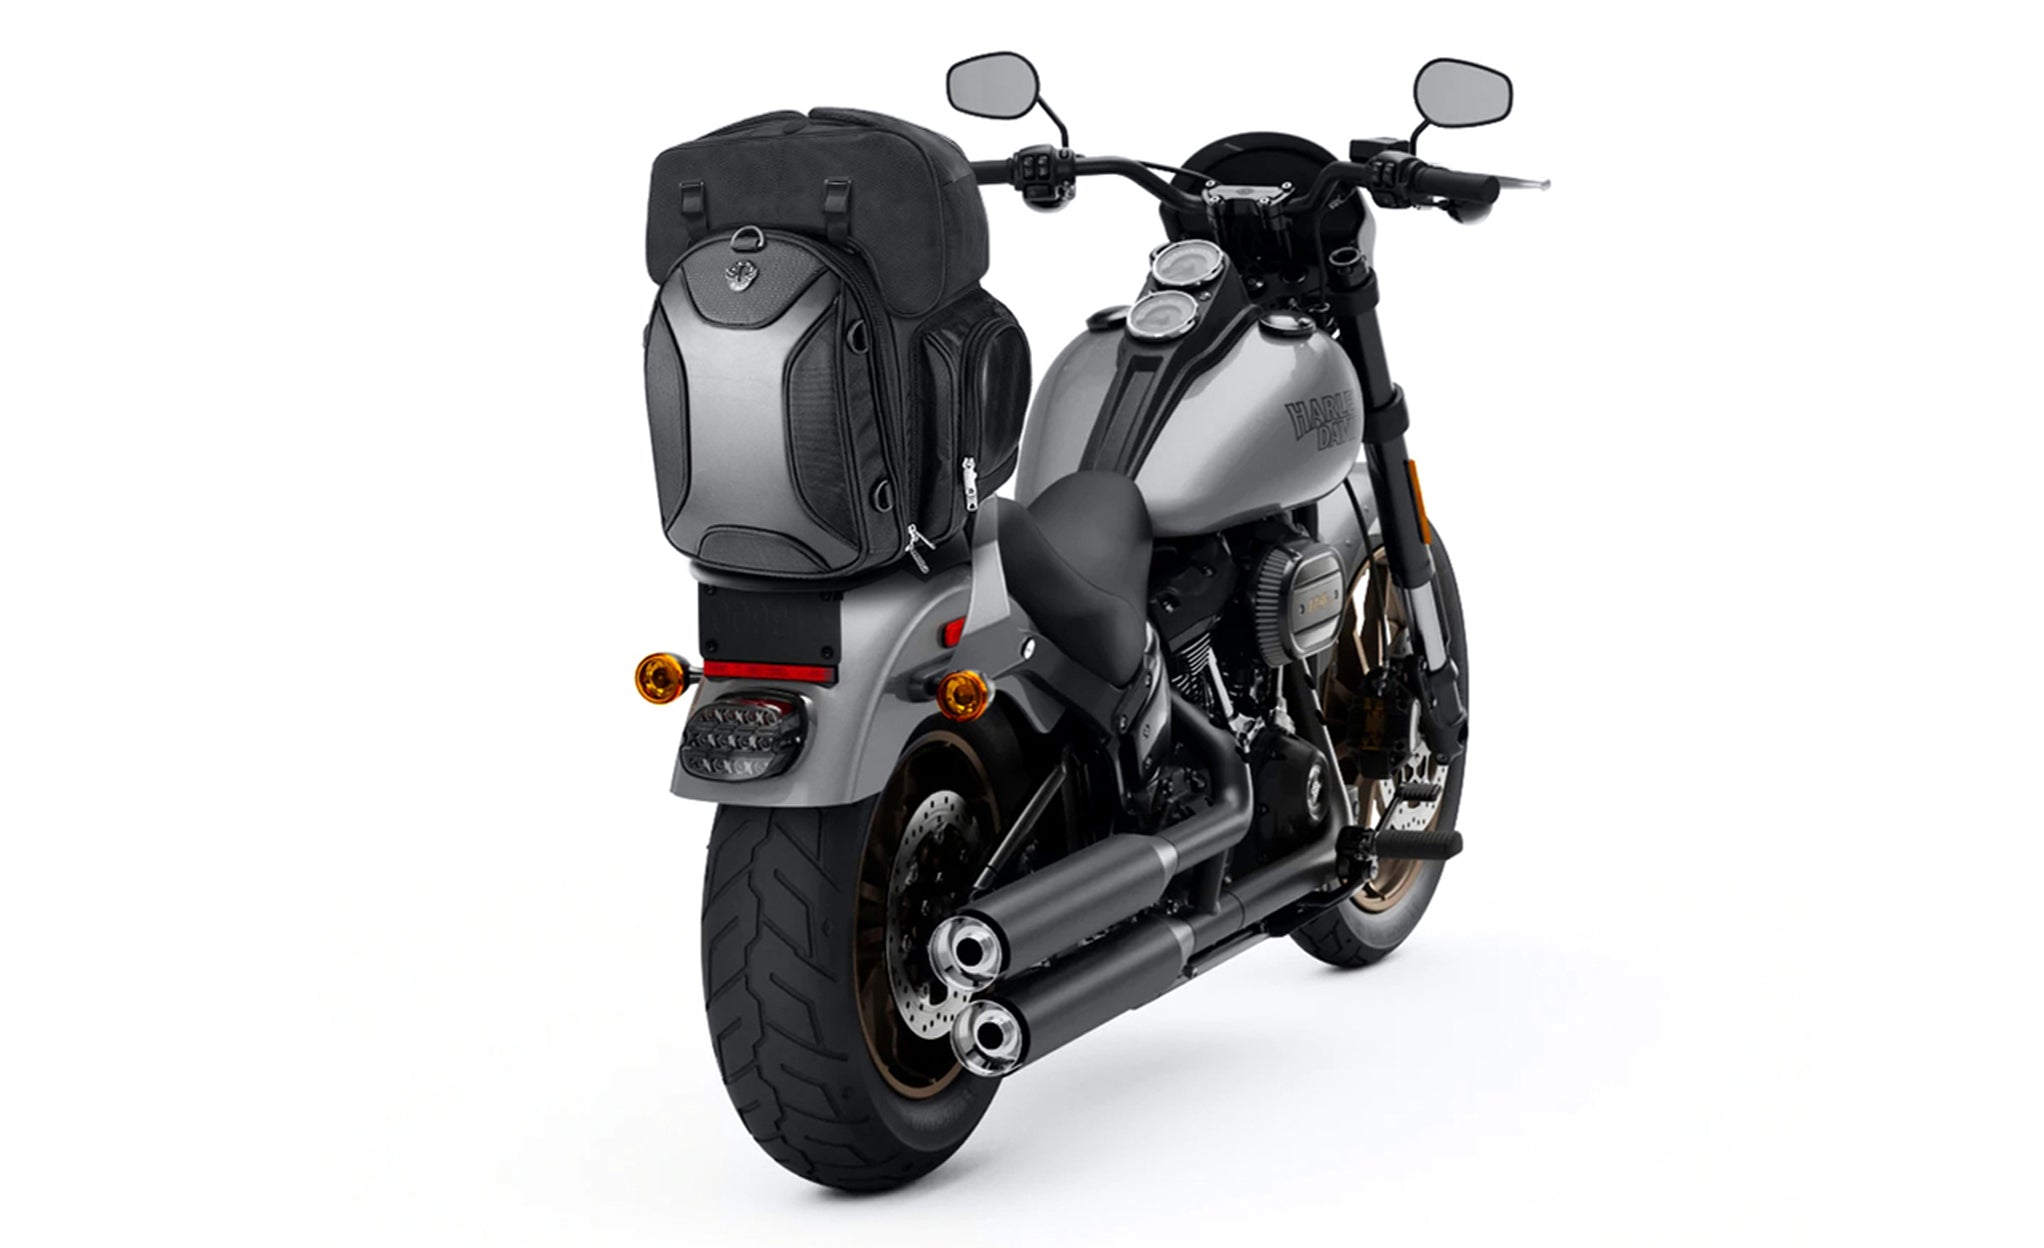 Viking Dagr Extra Large Honda Motorcycle Tail Bag Bag on Bike View @expand